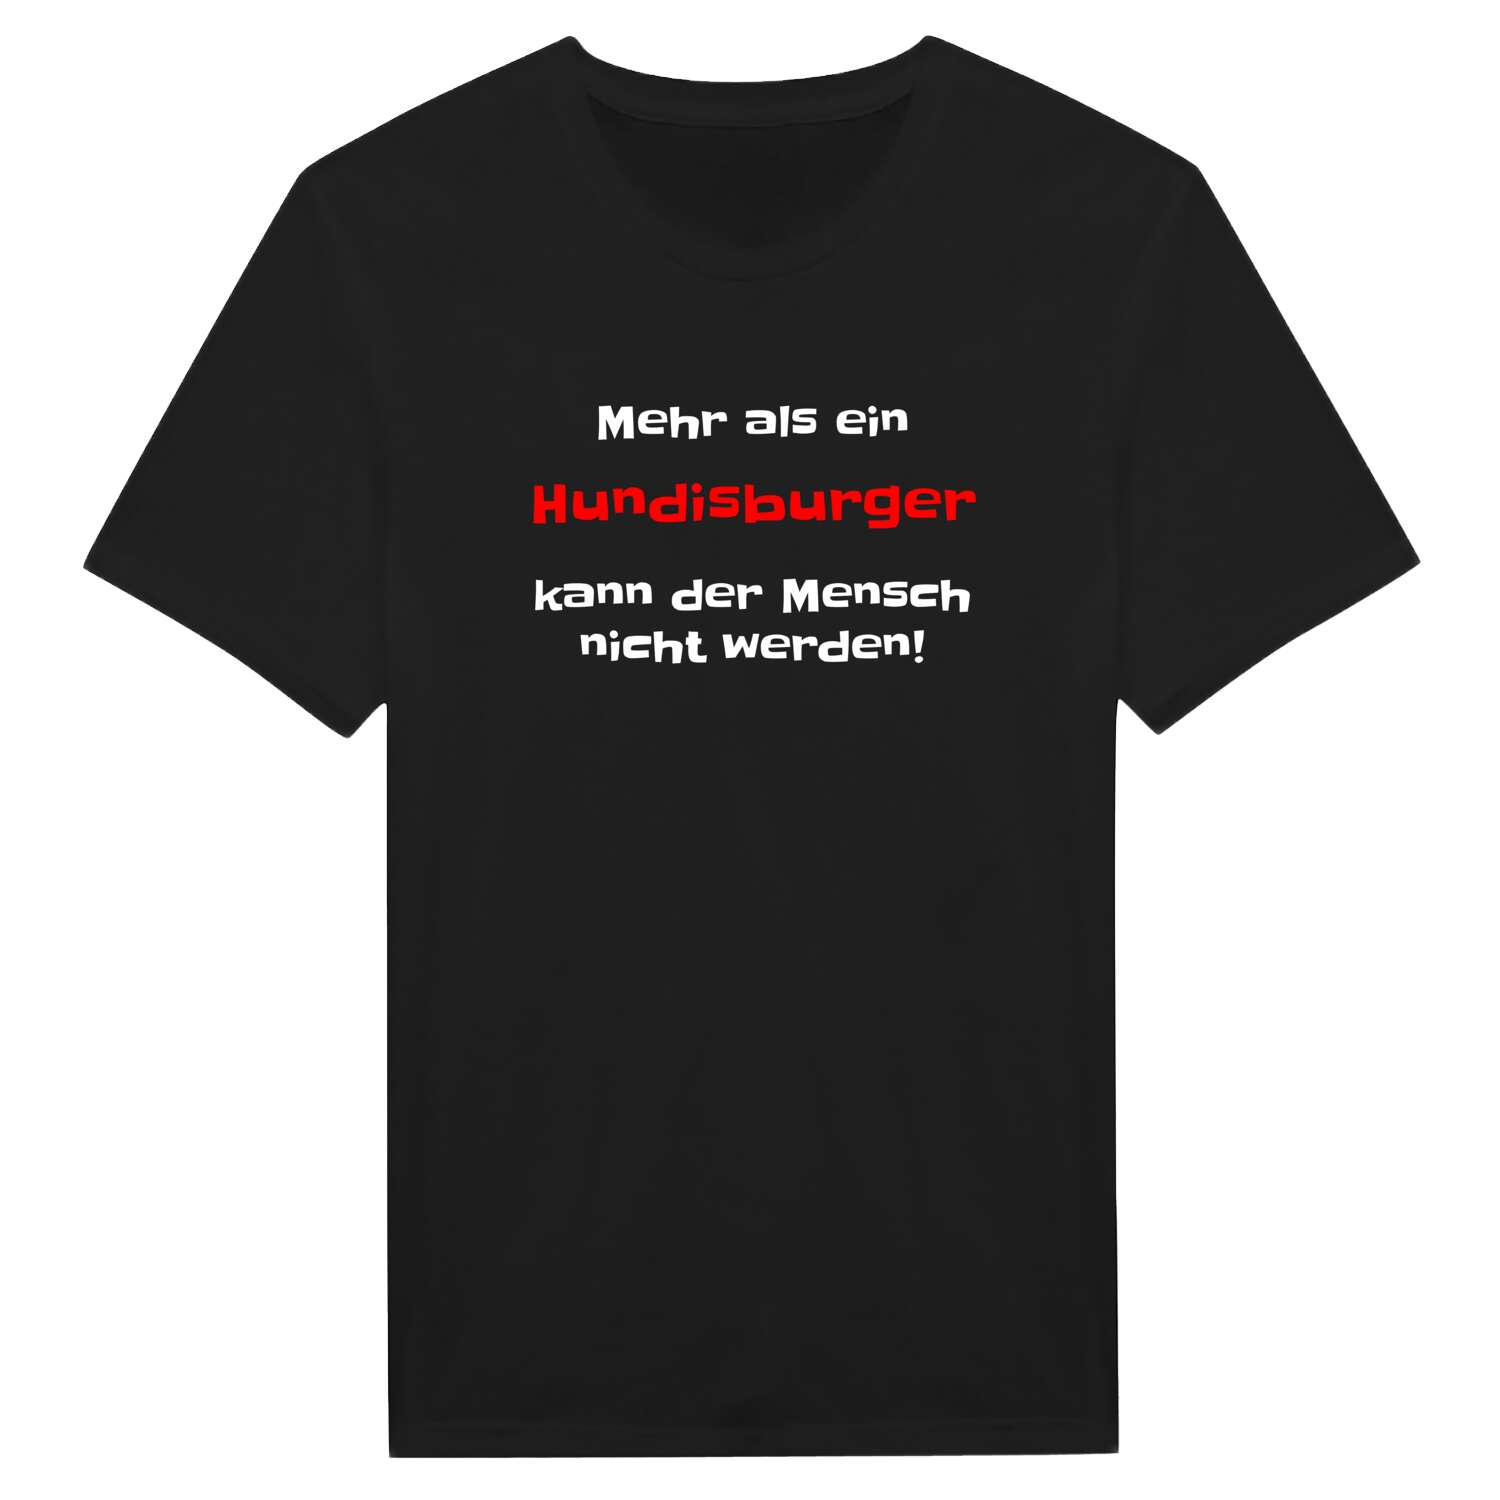 Hundisburg T-Shirt »Mehr als ein«